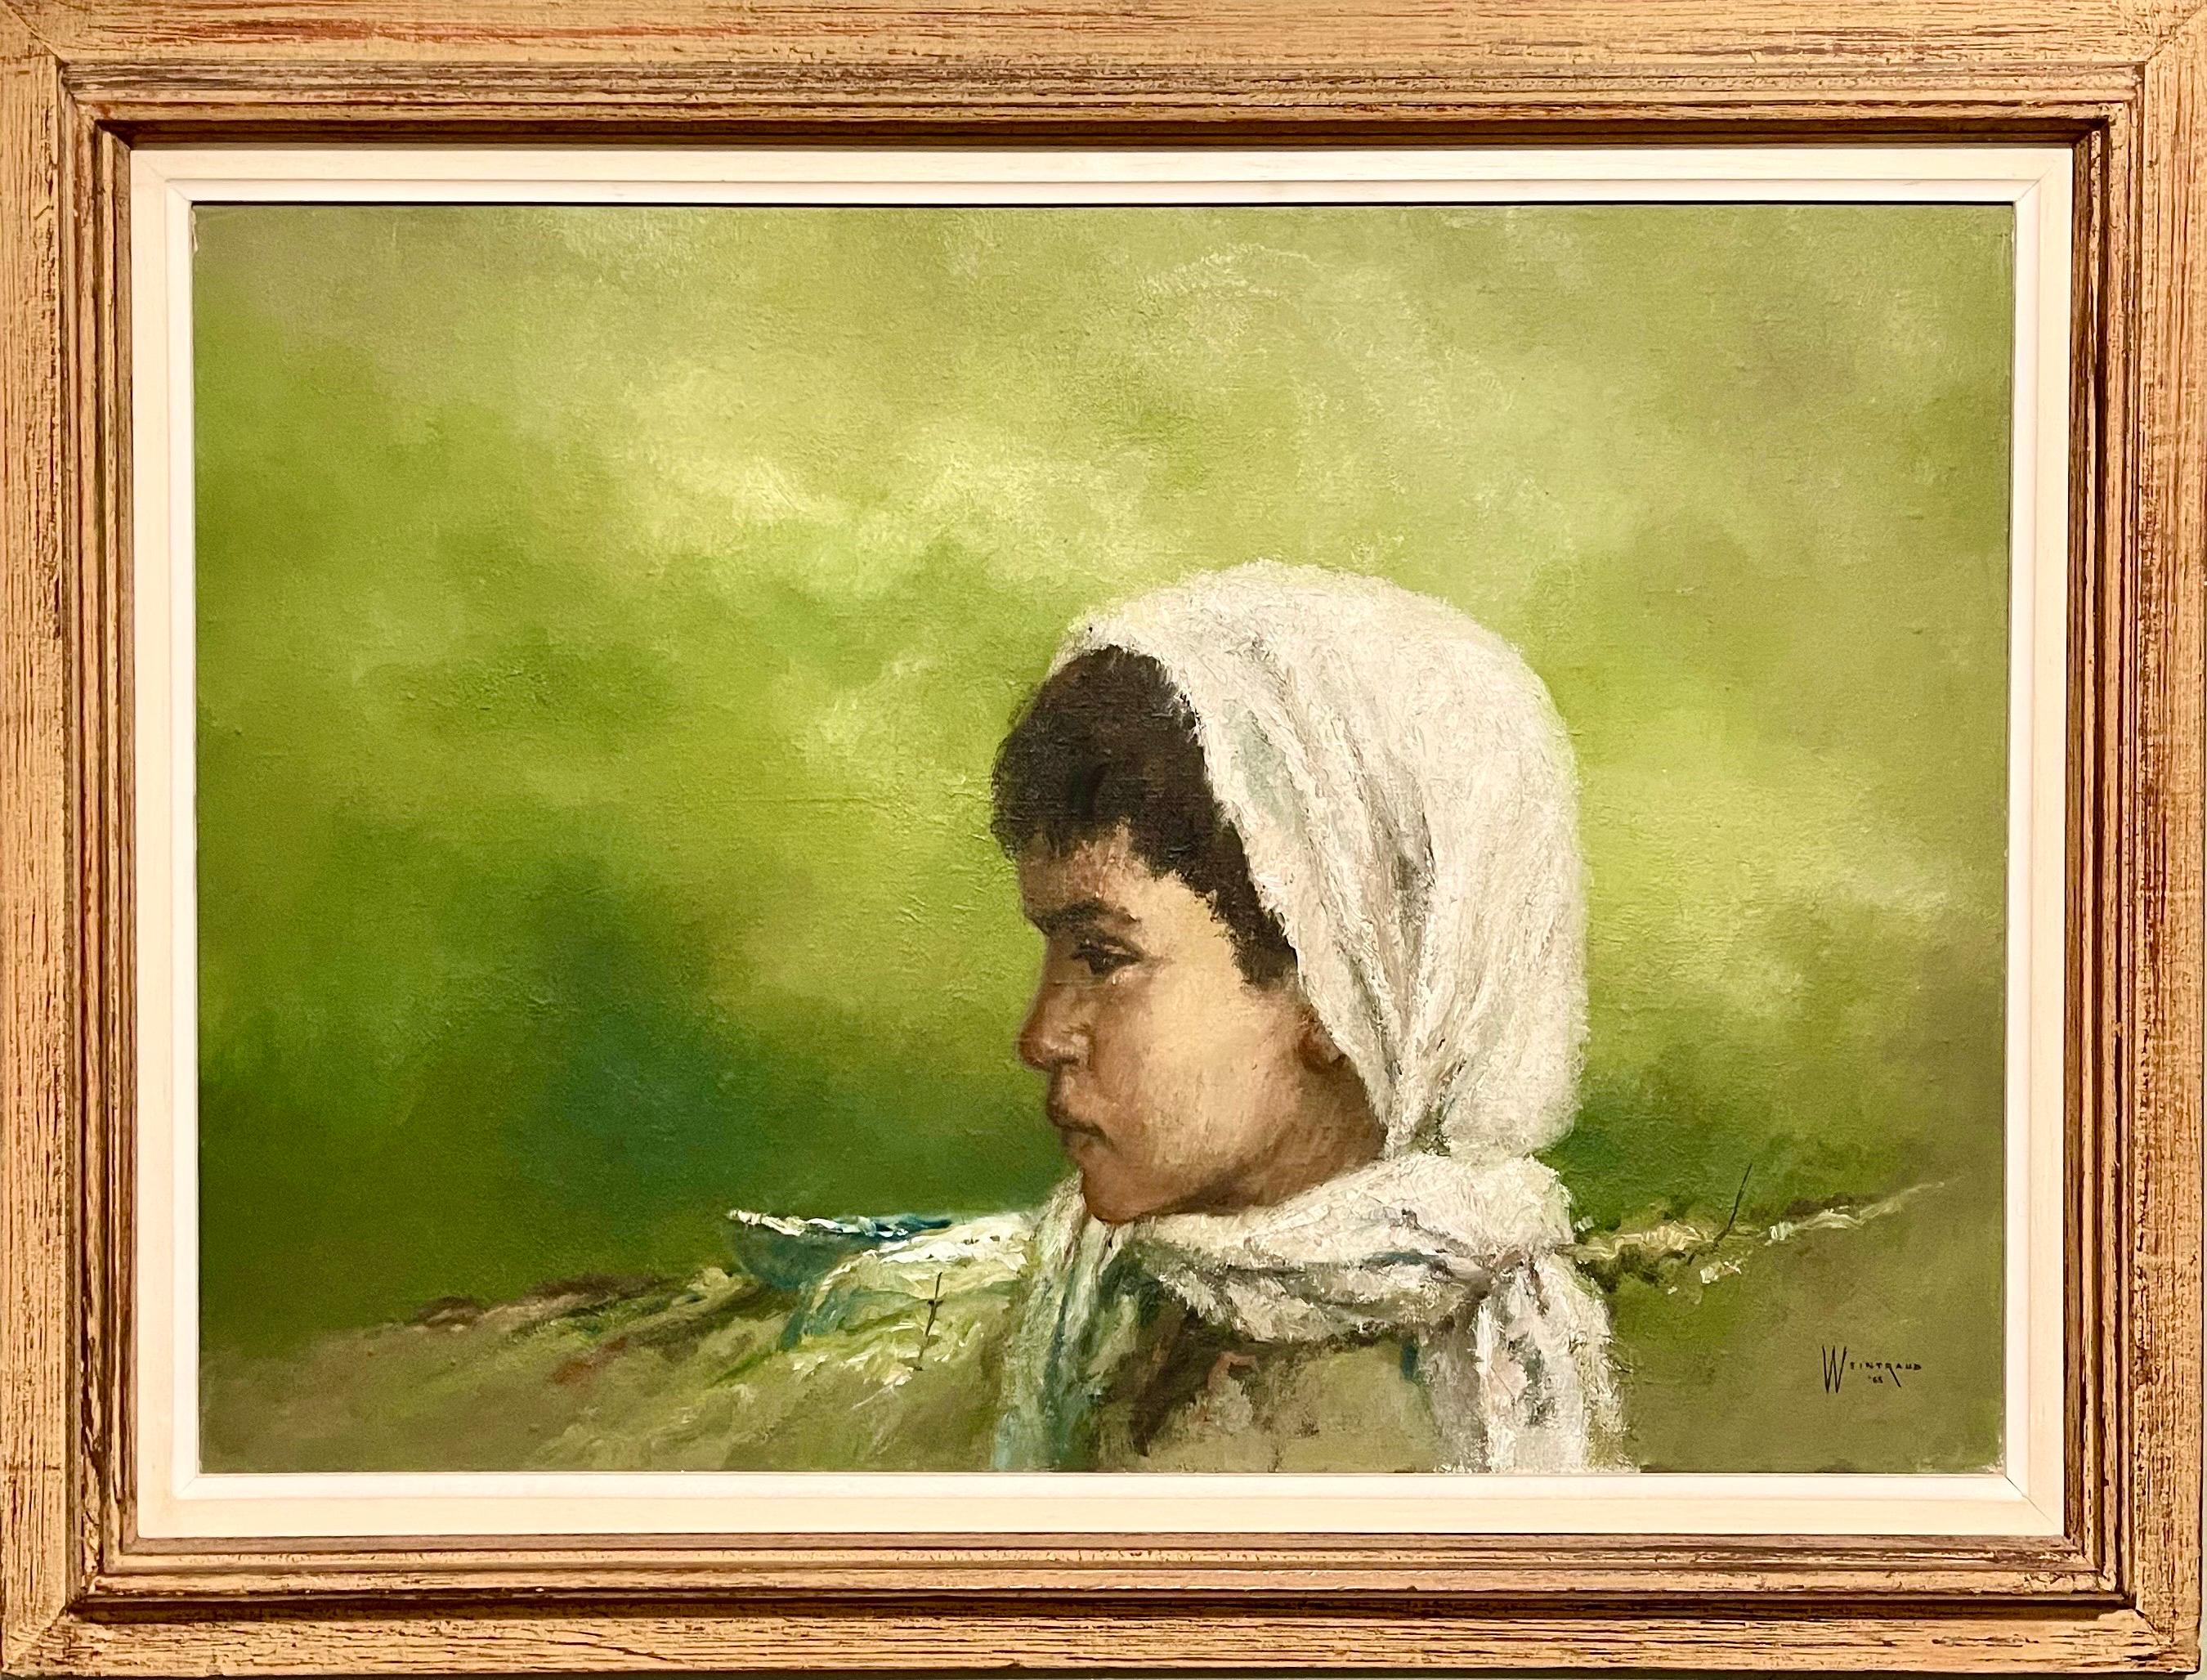 Portrait Painting William Weintraub - Grande peinture à l'huile expressionniste orientaliste israélienne d'un enfant drapé Kibbutz Art